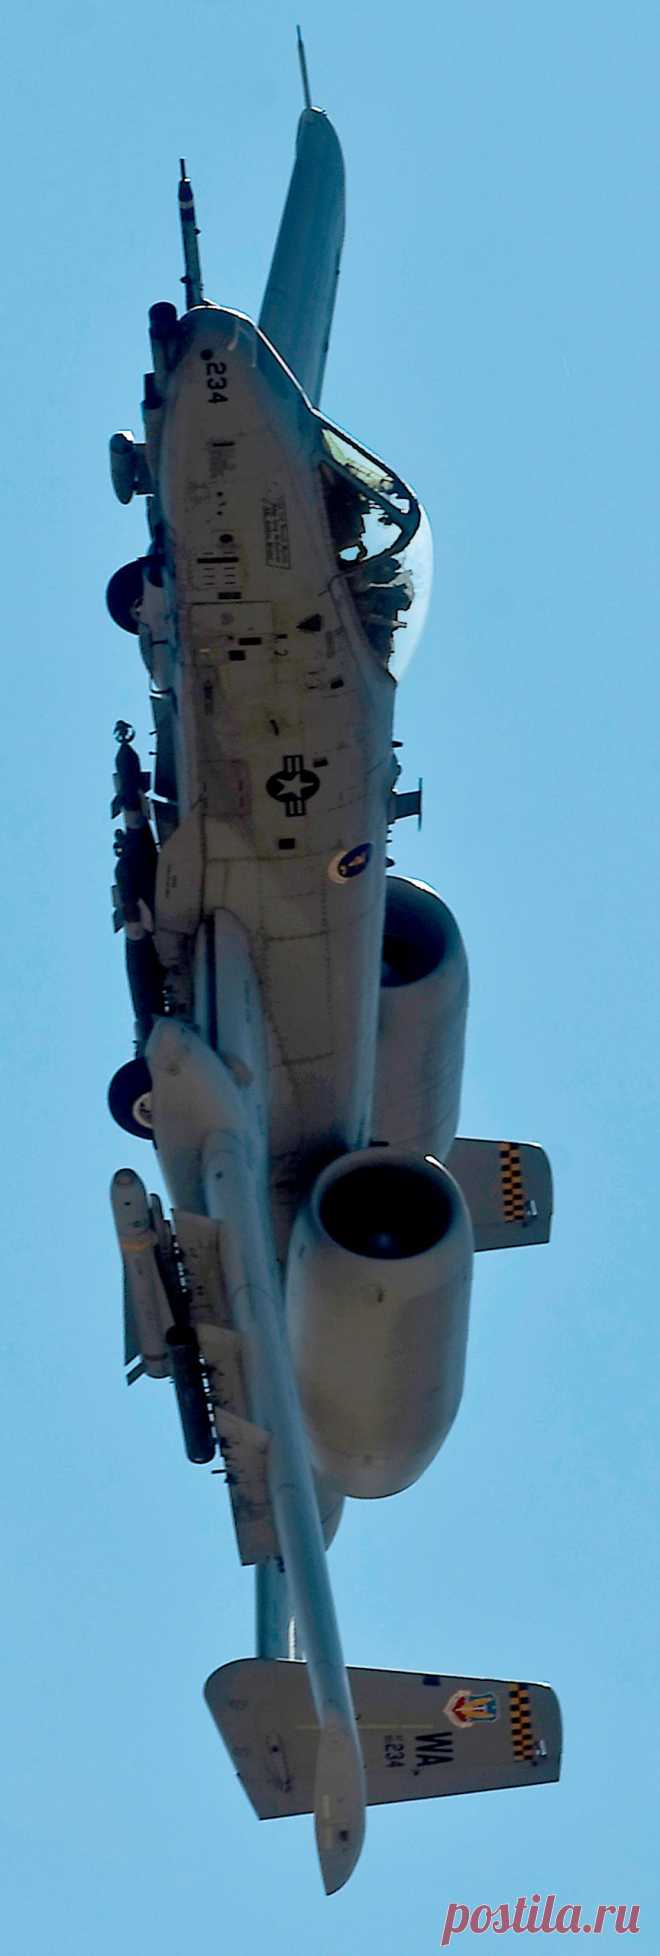 A-10 Thunderbolt. |АВИАЦИЯ